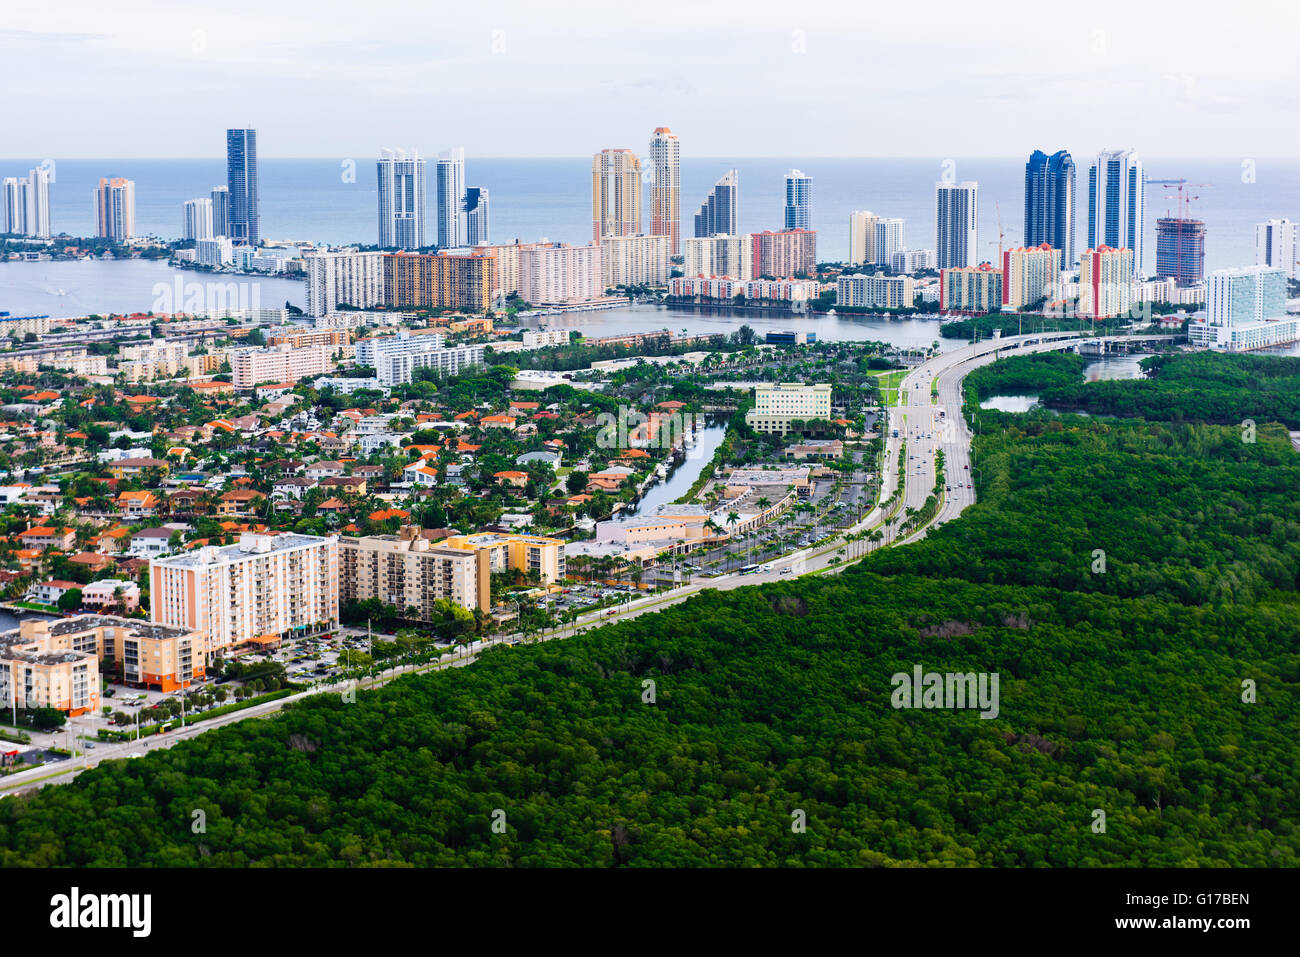 Vista aerea di grattacieli e proliferazione urbana, Aventura, Miami, Florida, Stati Uniti d'America Foto Stock